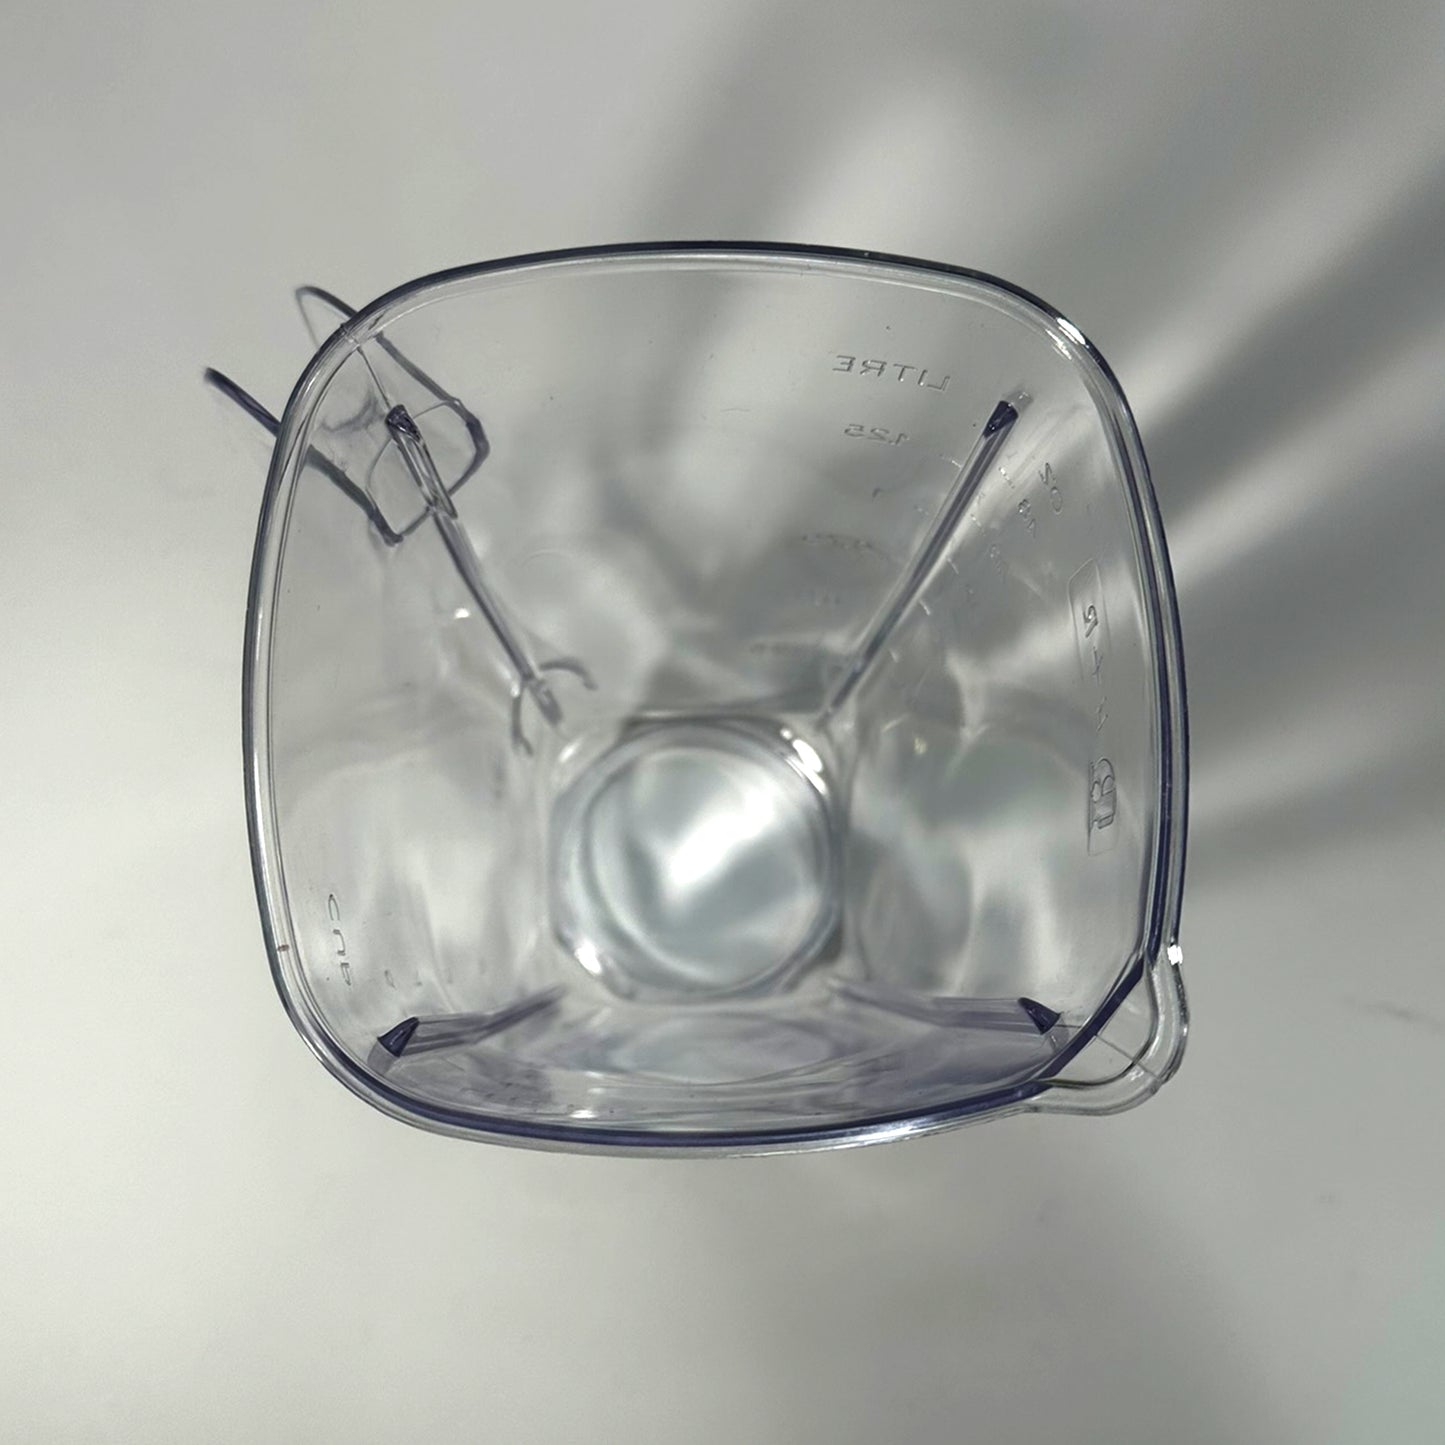 Vaso de policarbonato tipo Moulinex cuadrado